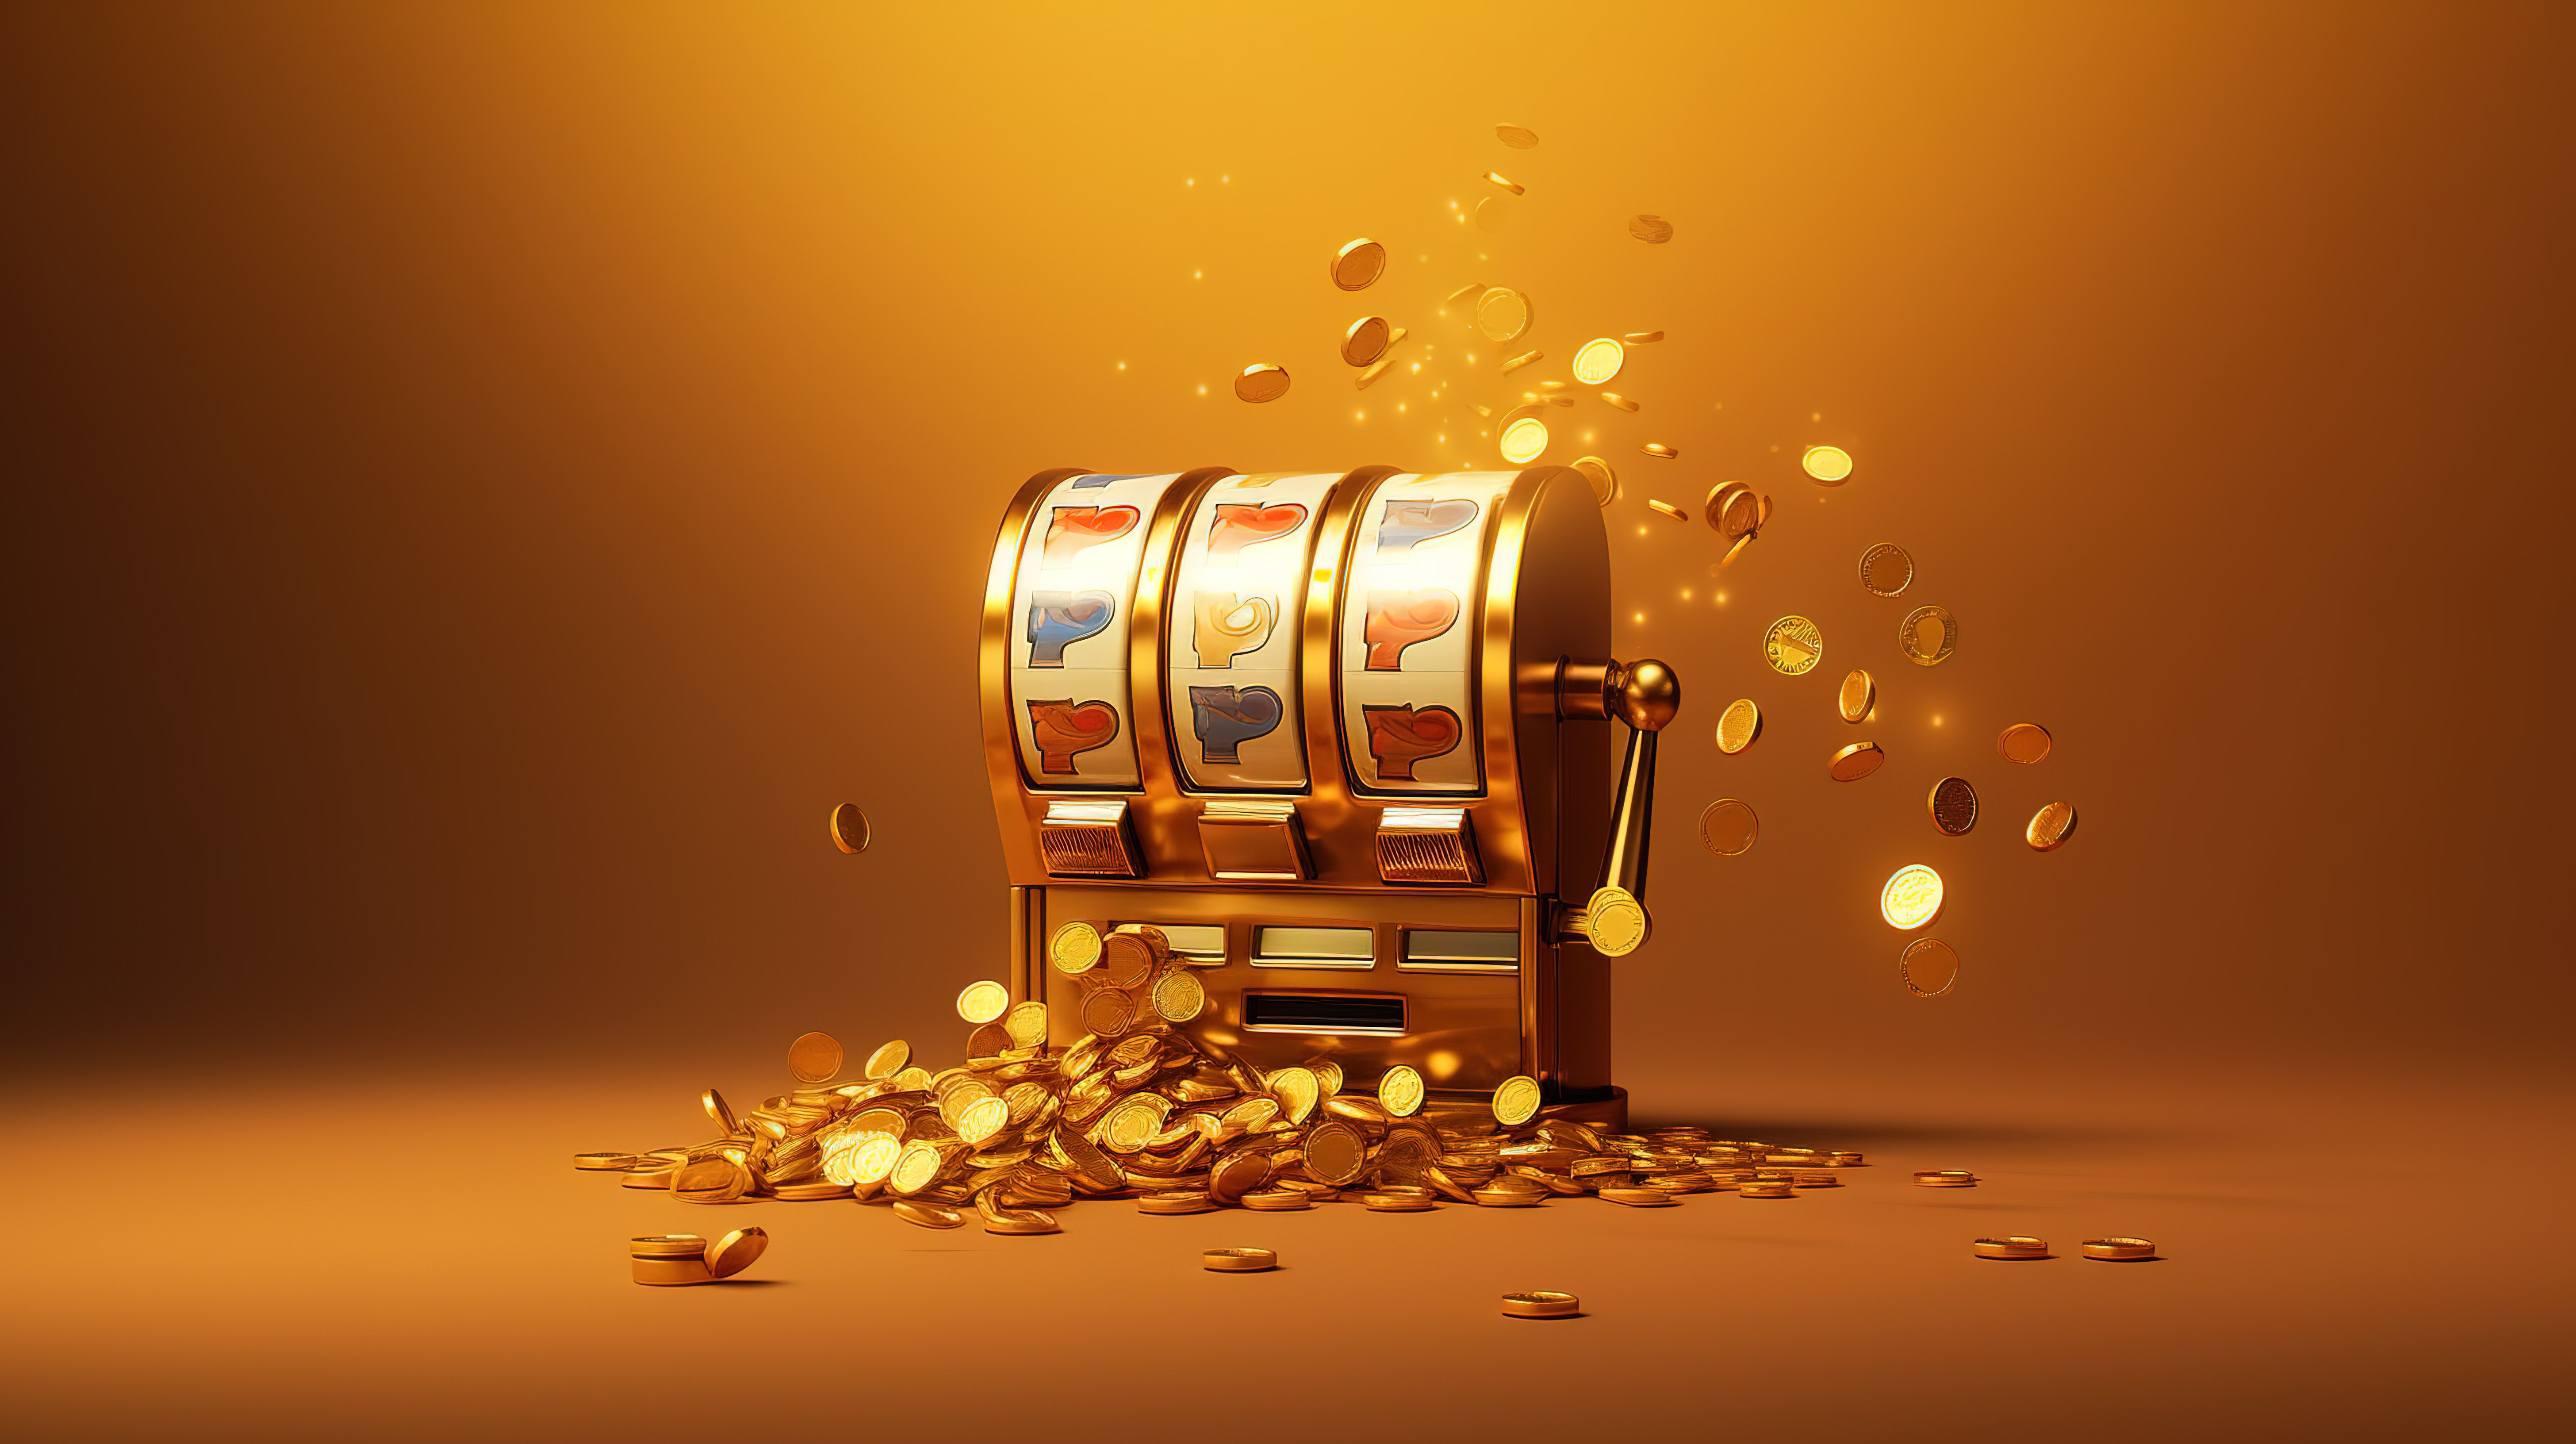 在线赌场中令人惊叹的 3D 老虎机，飞舞的硬币和黄金背景说明了赌博的快感图片